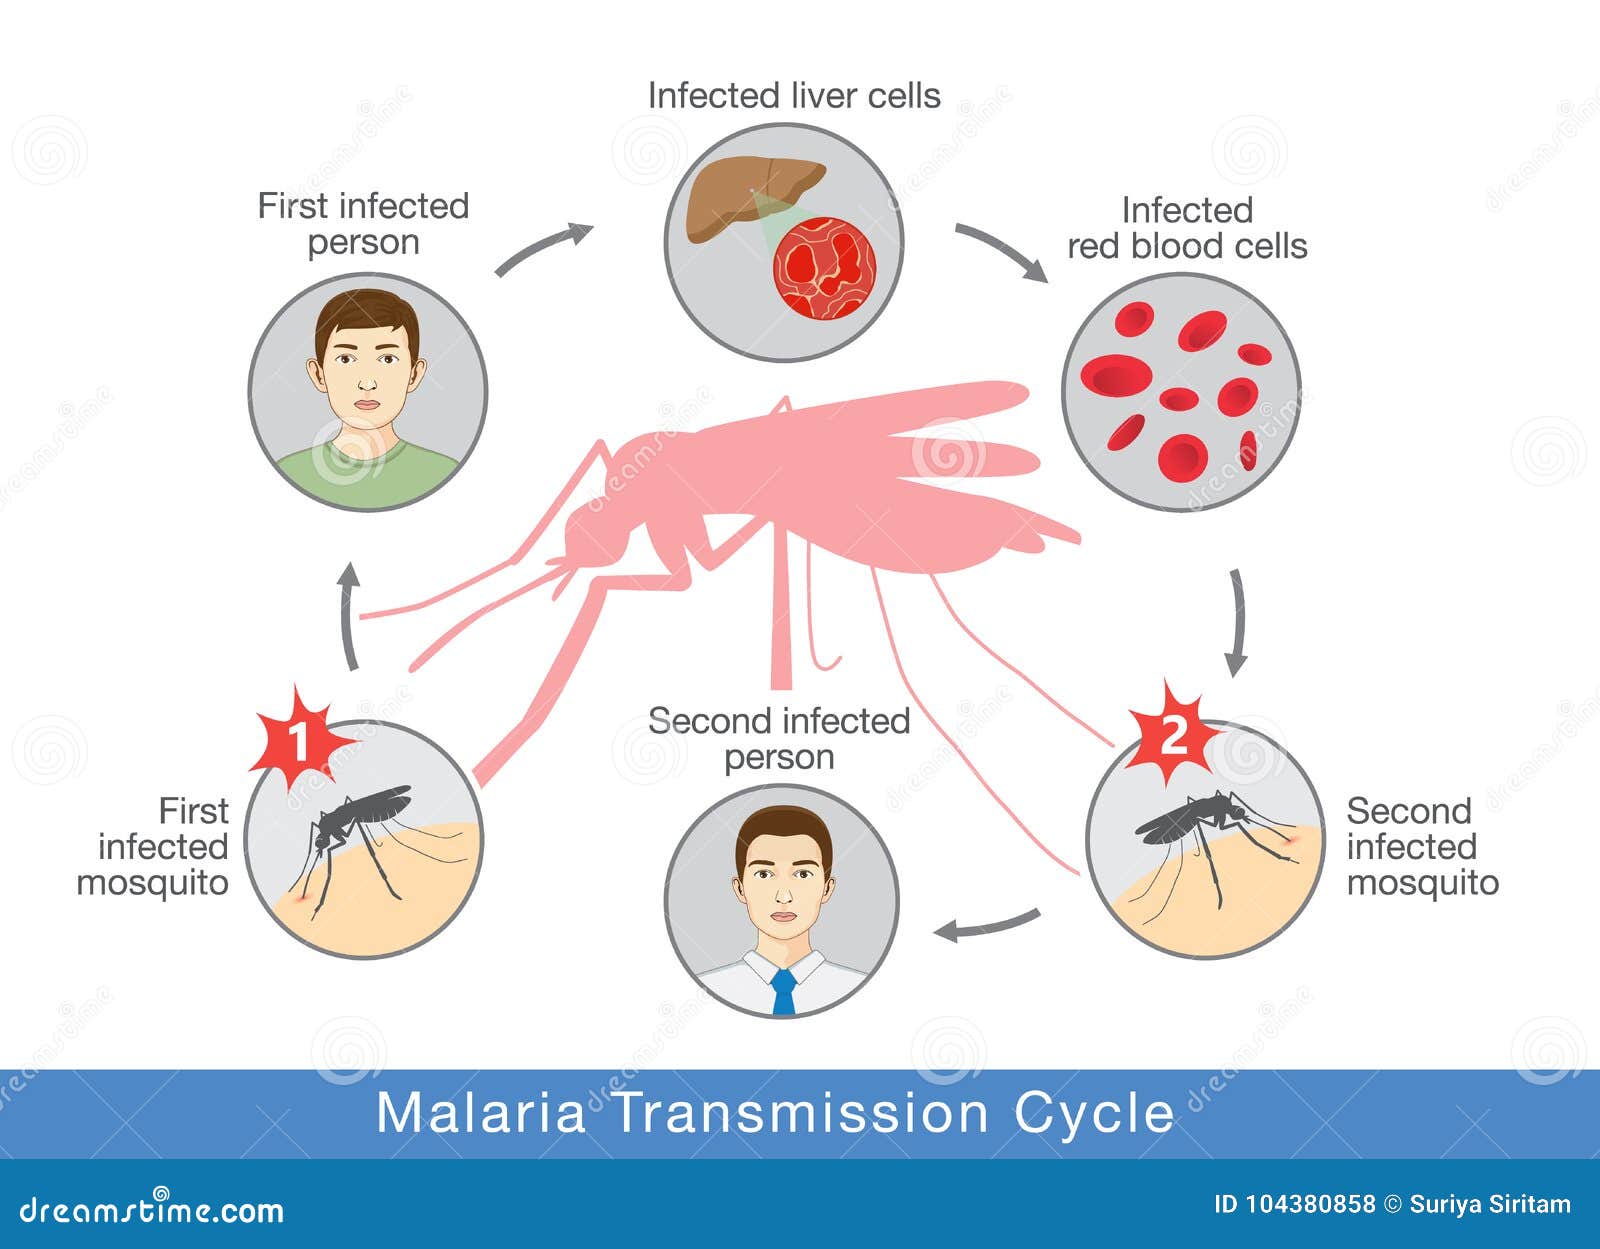 Заражение человека малярией происходит. Механизм заражения малярией. Малярия механизм передачи инфекции. Механизм передачи малярийного плазмодия. Пути передачи при малярии.